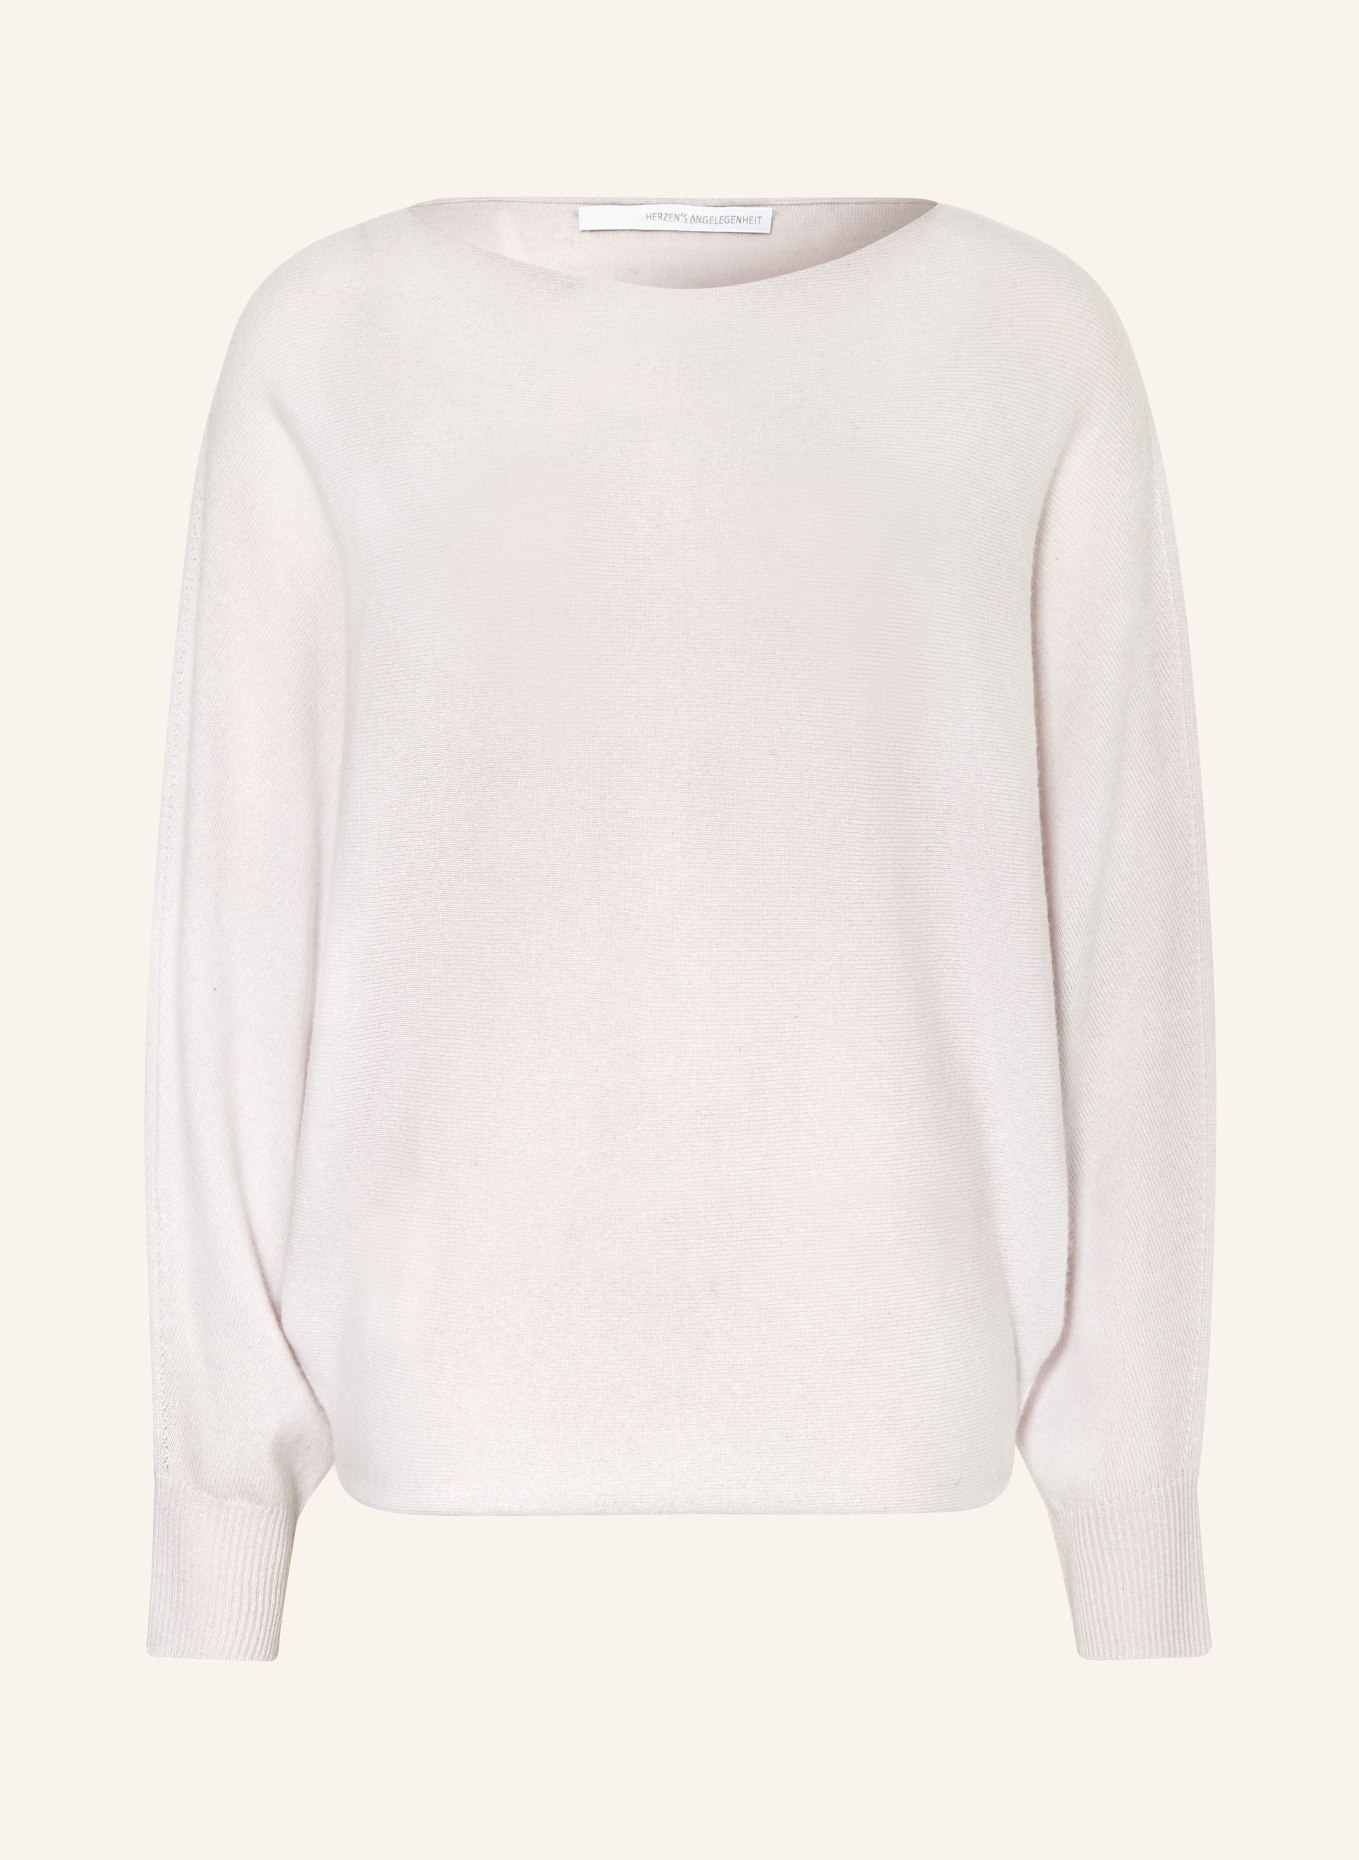 HERZEN'S ANGELEGENHEIT Sweater with cashmere, Color: CREAM (Image 1)